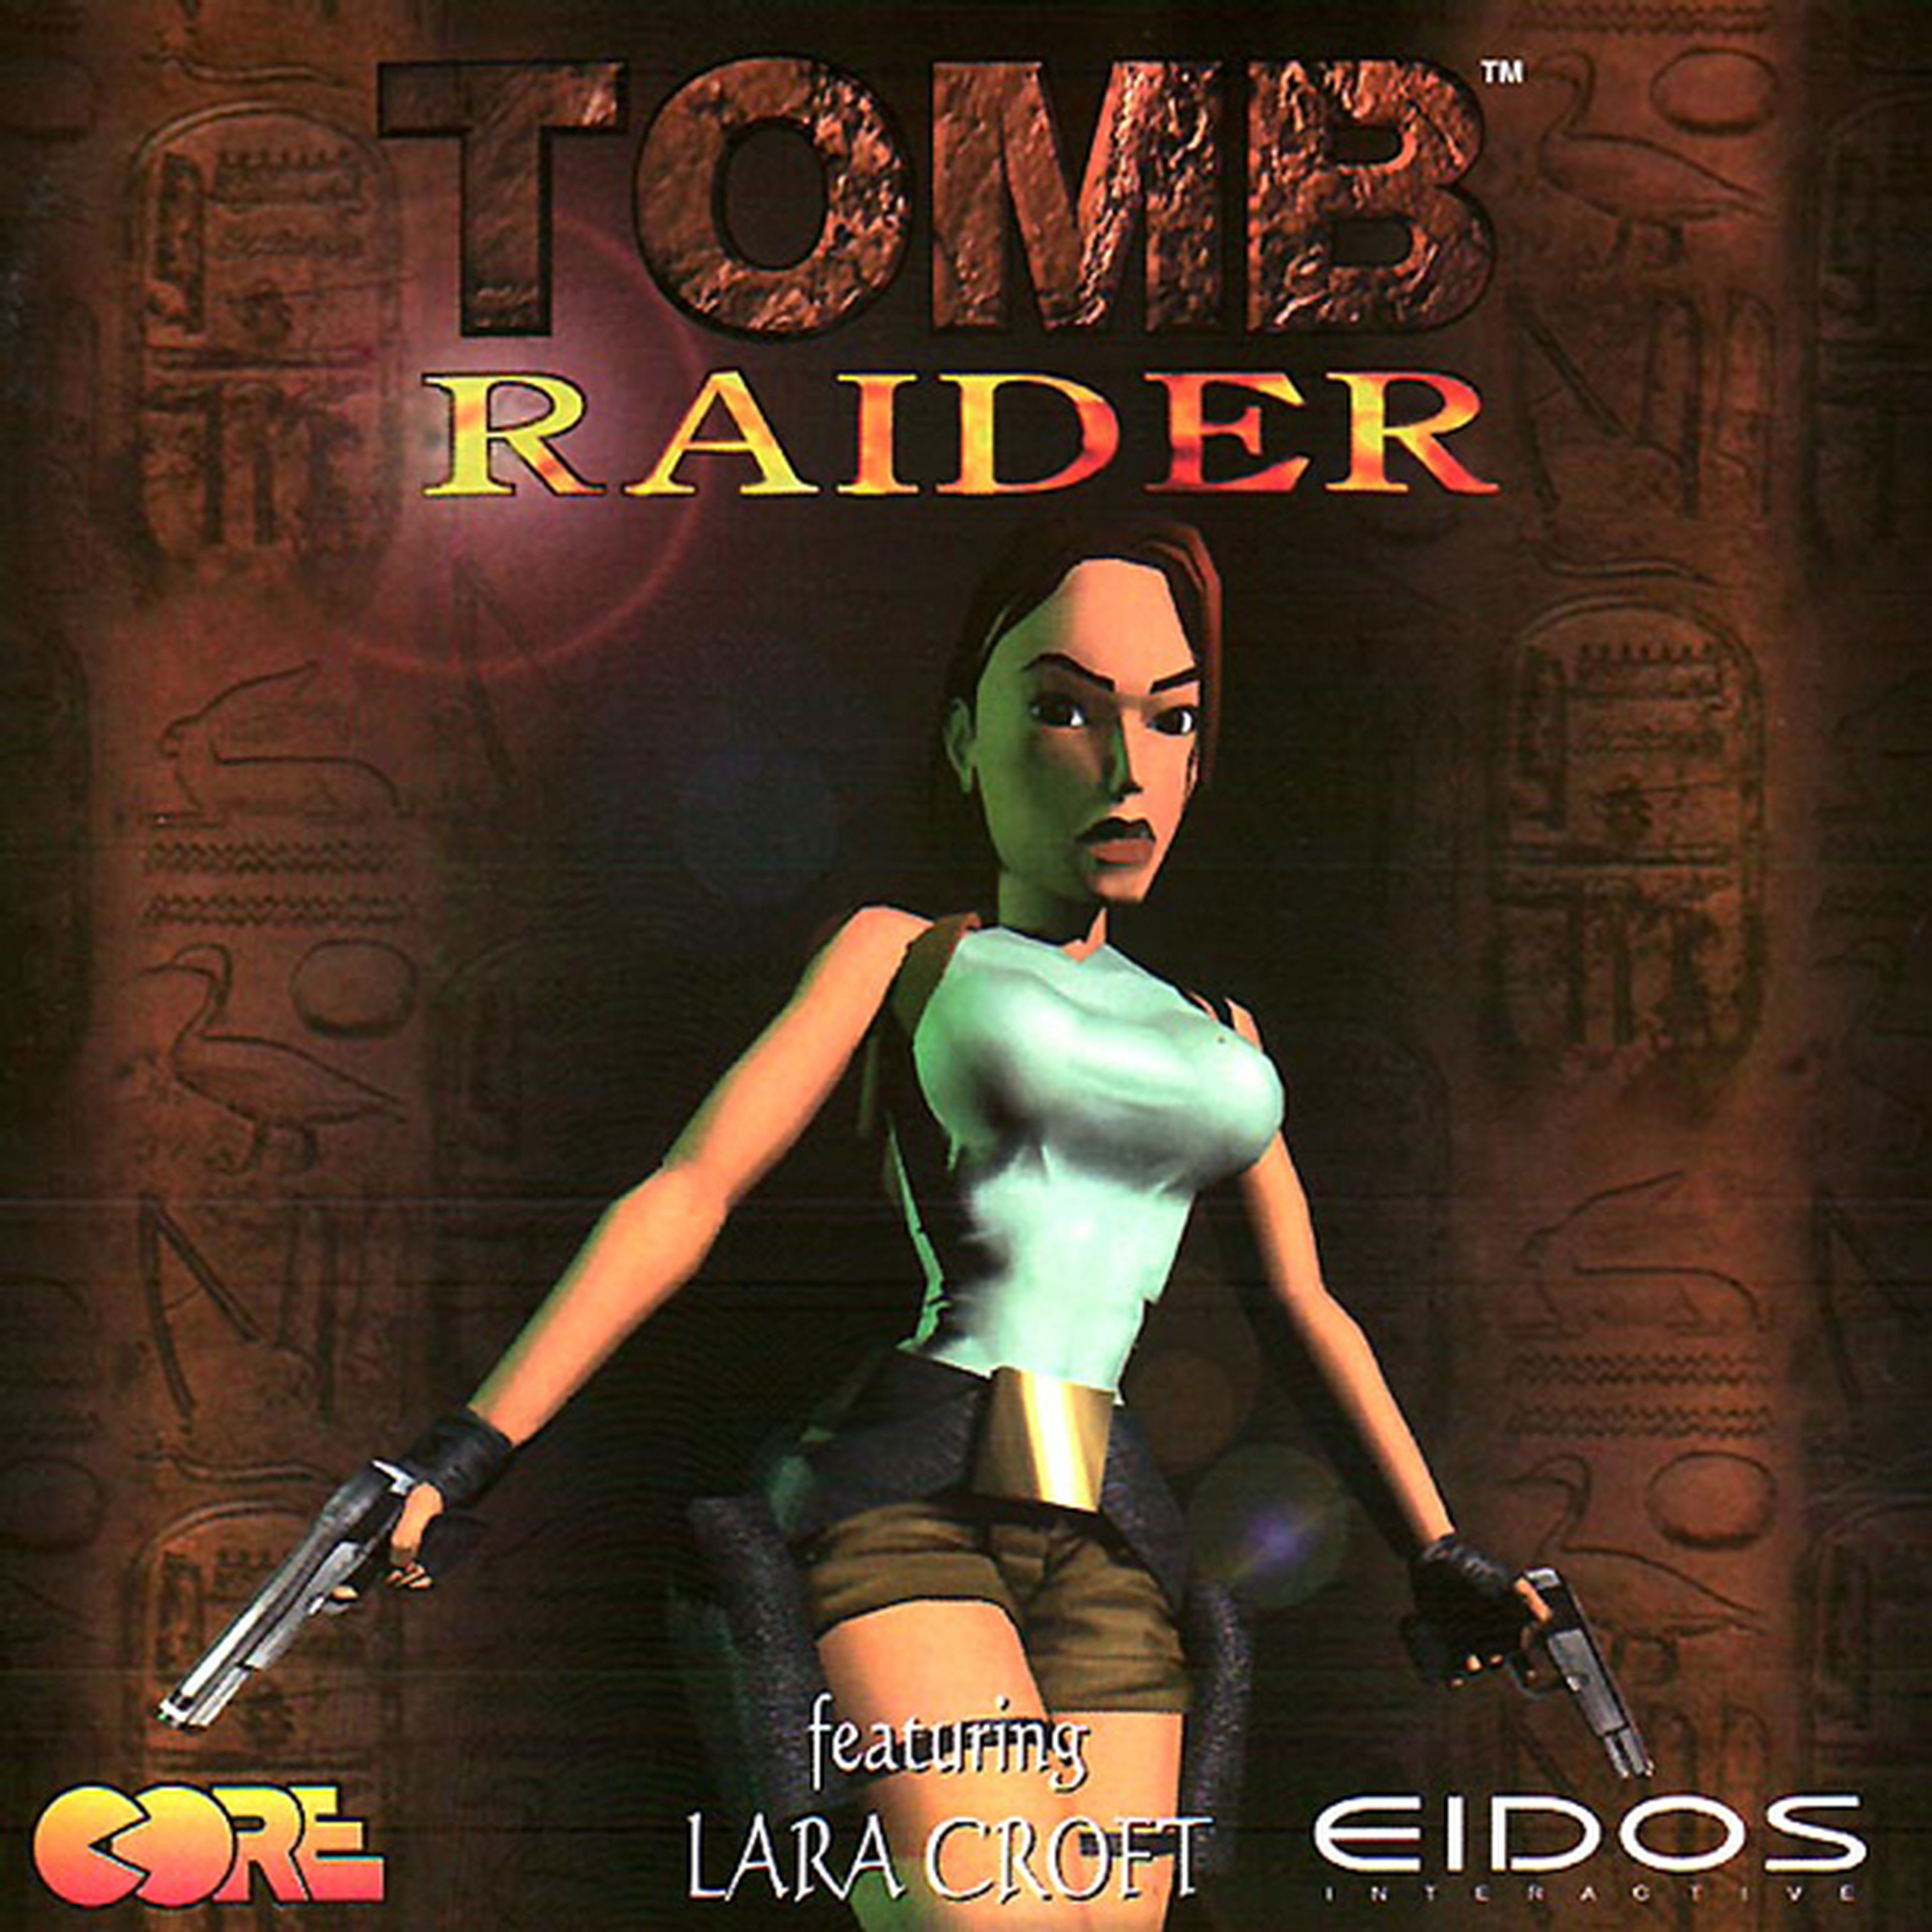 Así es la portada del nuevo Tomb Raider